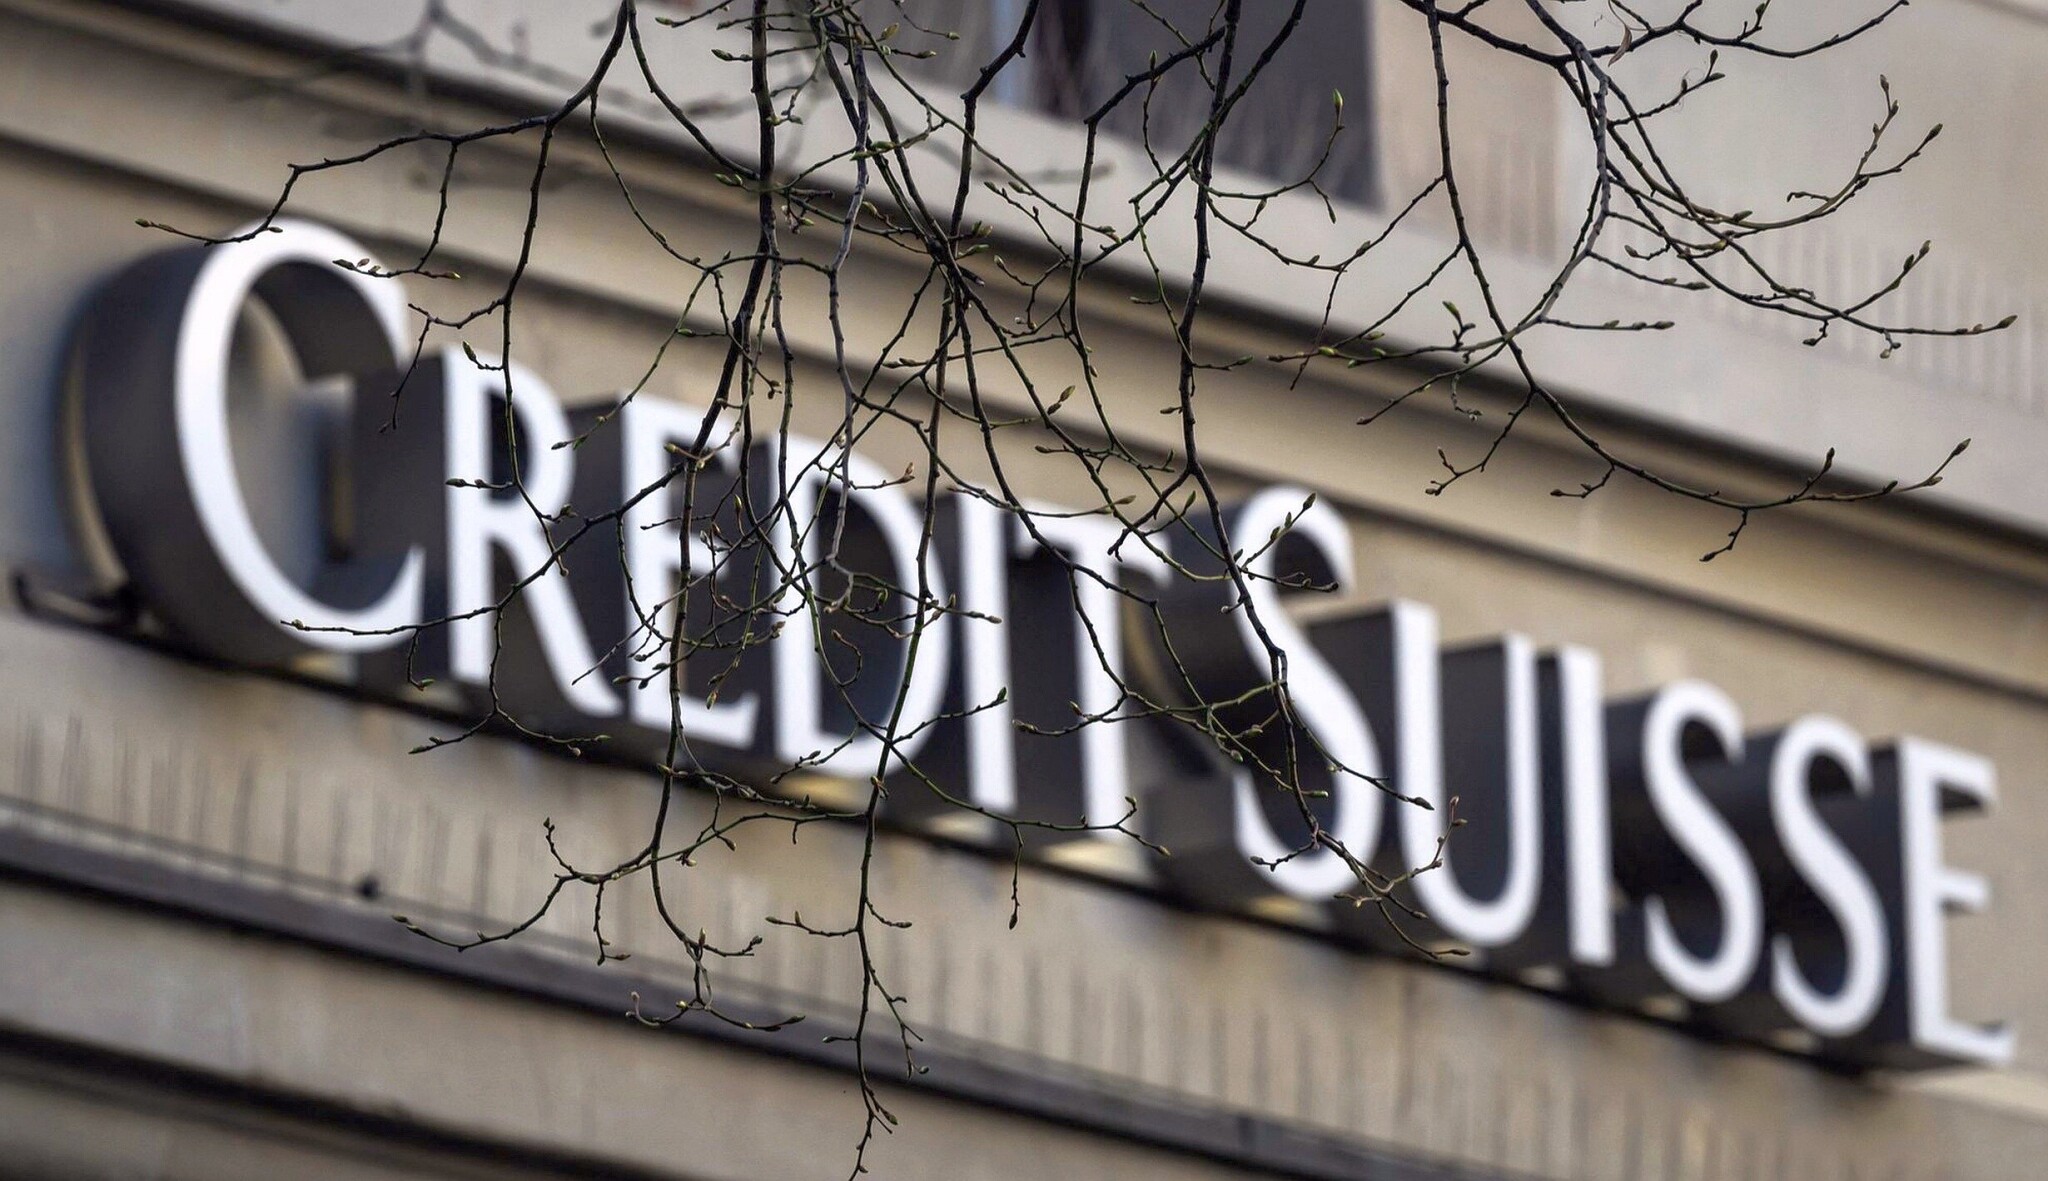 UBS žádá vládu o záruky ve výši šesti miliard dolarů, pokud má dojít k převzetí Credit Suisse